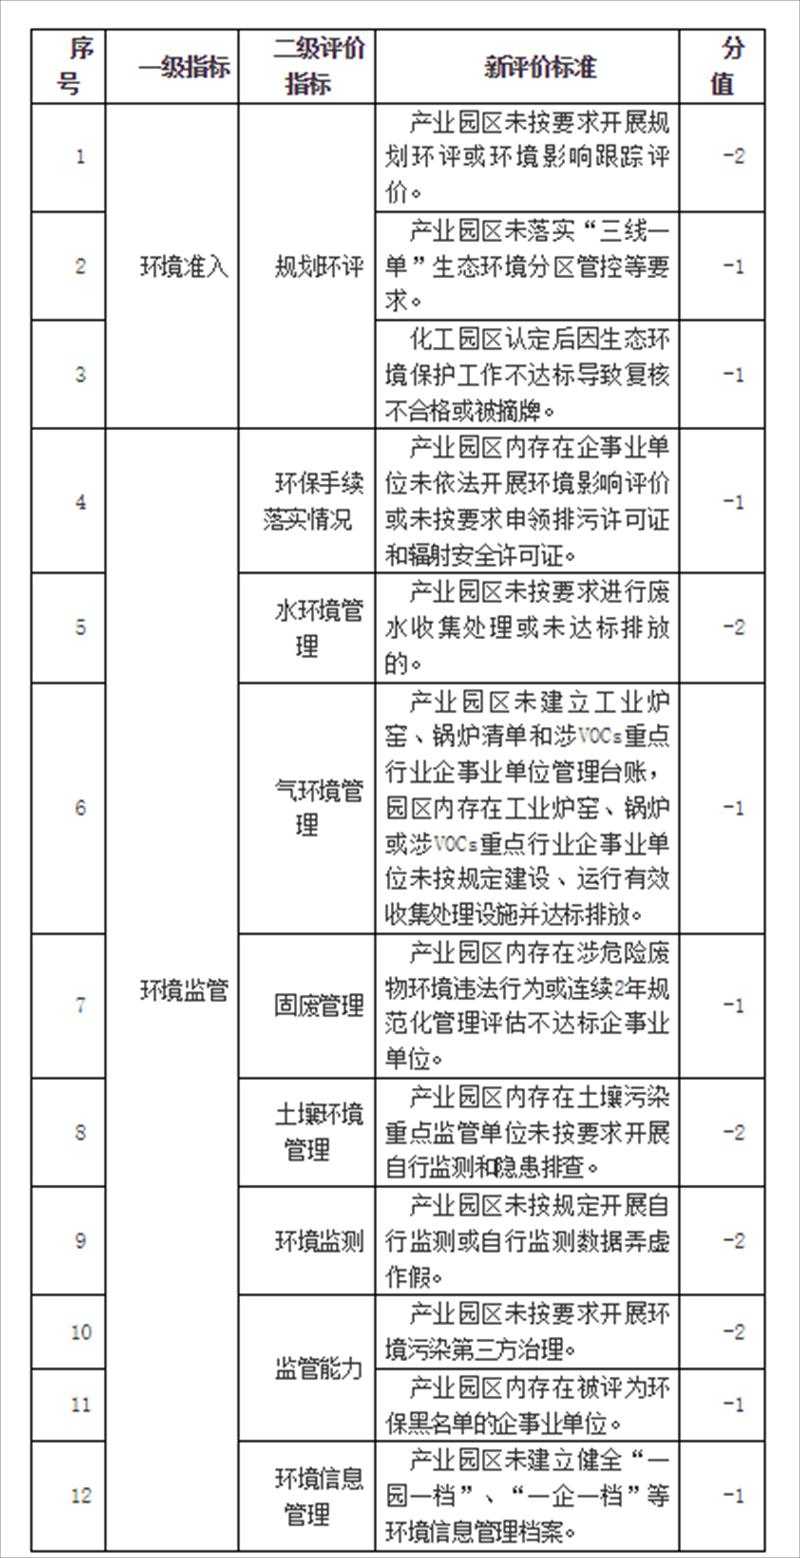 《湖南省产业园区环保信用评价标准》